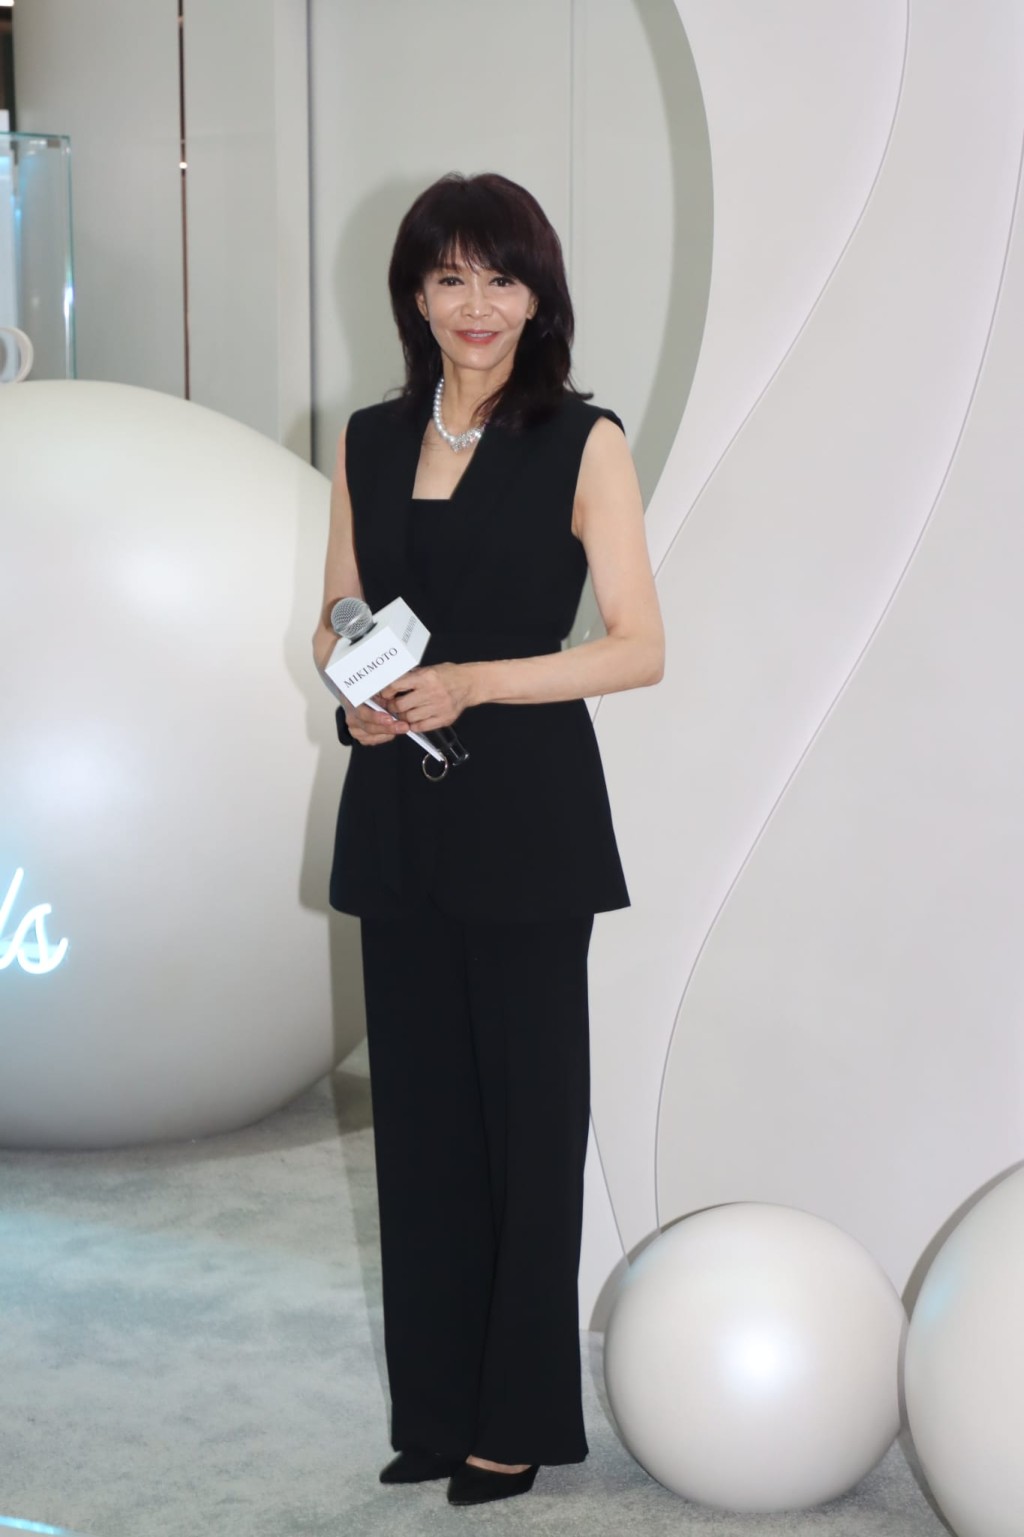 郑裕玲为日本殿堂级珠宝品牌举行期间限定店的揭幕活动担任司仪。